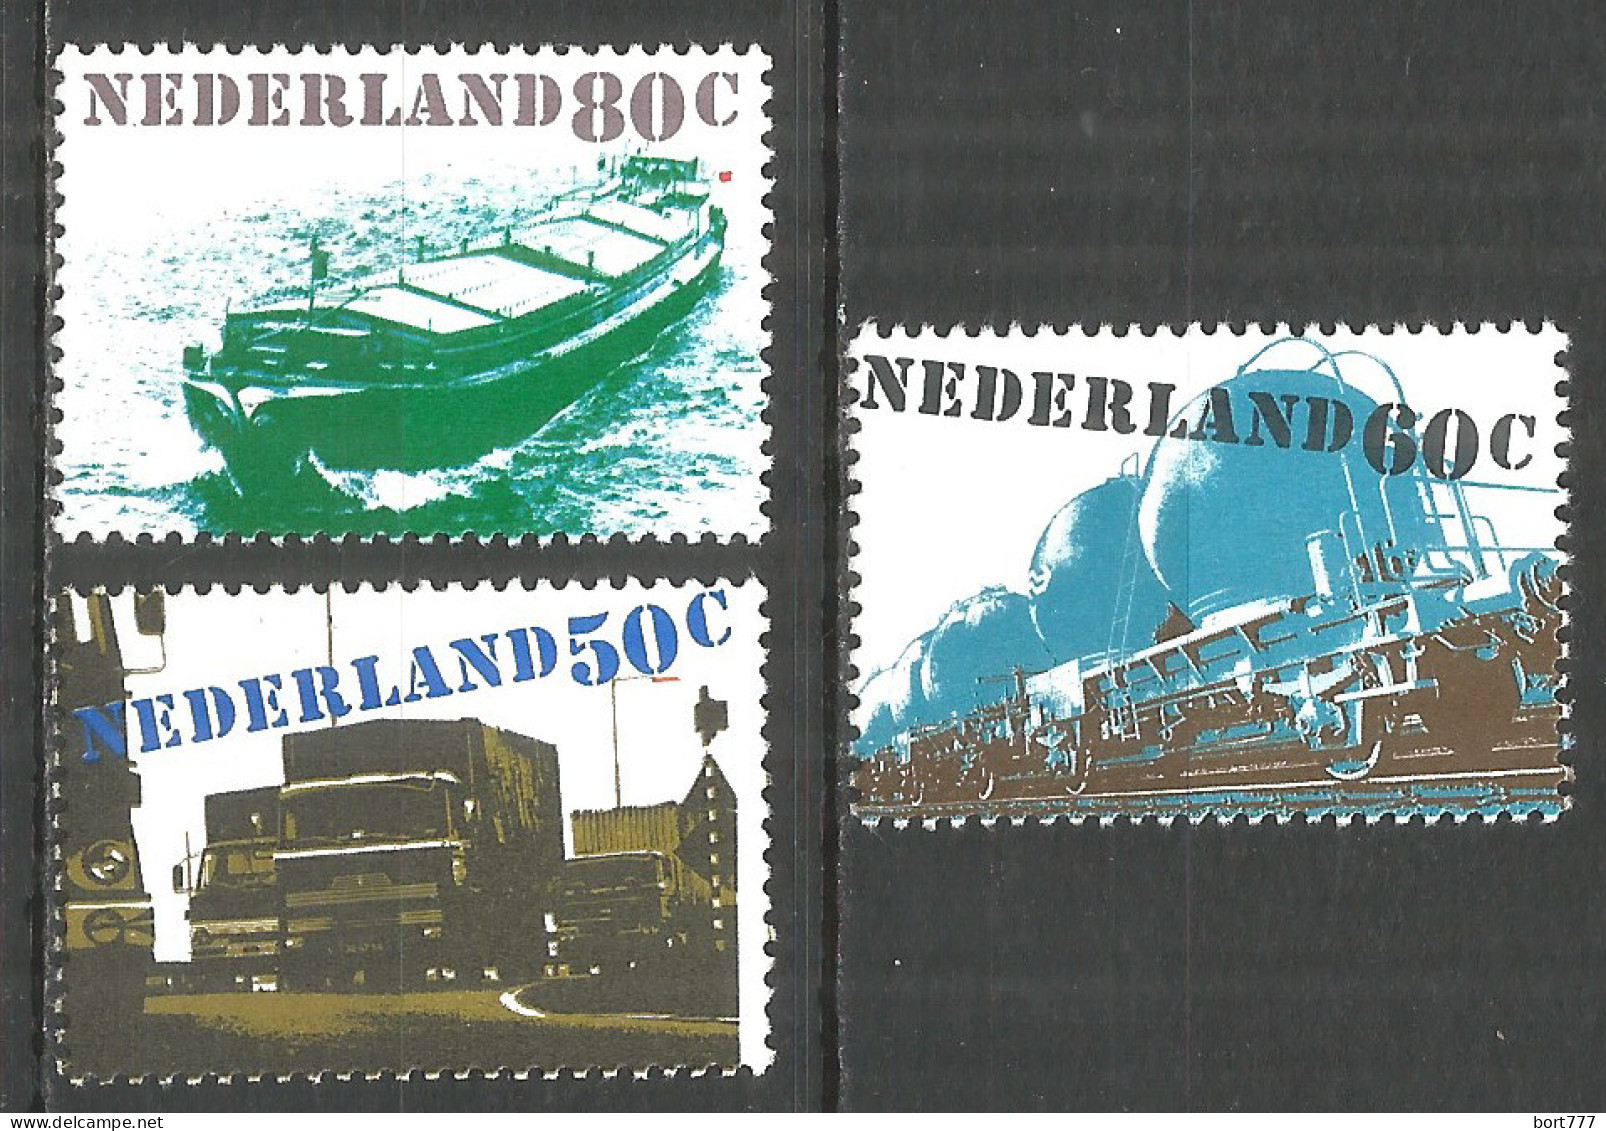 NETHERLANDS 1980 Year , Mint Stamps MNH (**) Transport - Ongebruikt